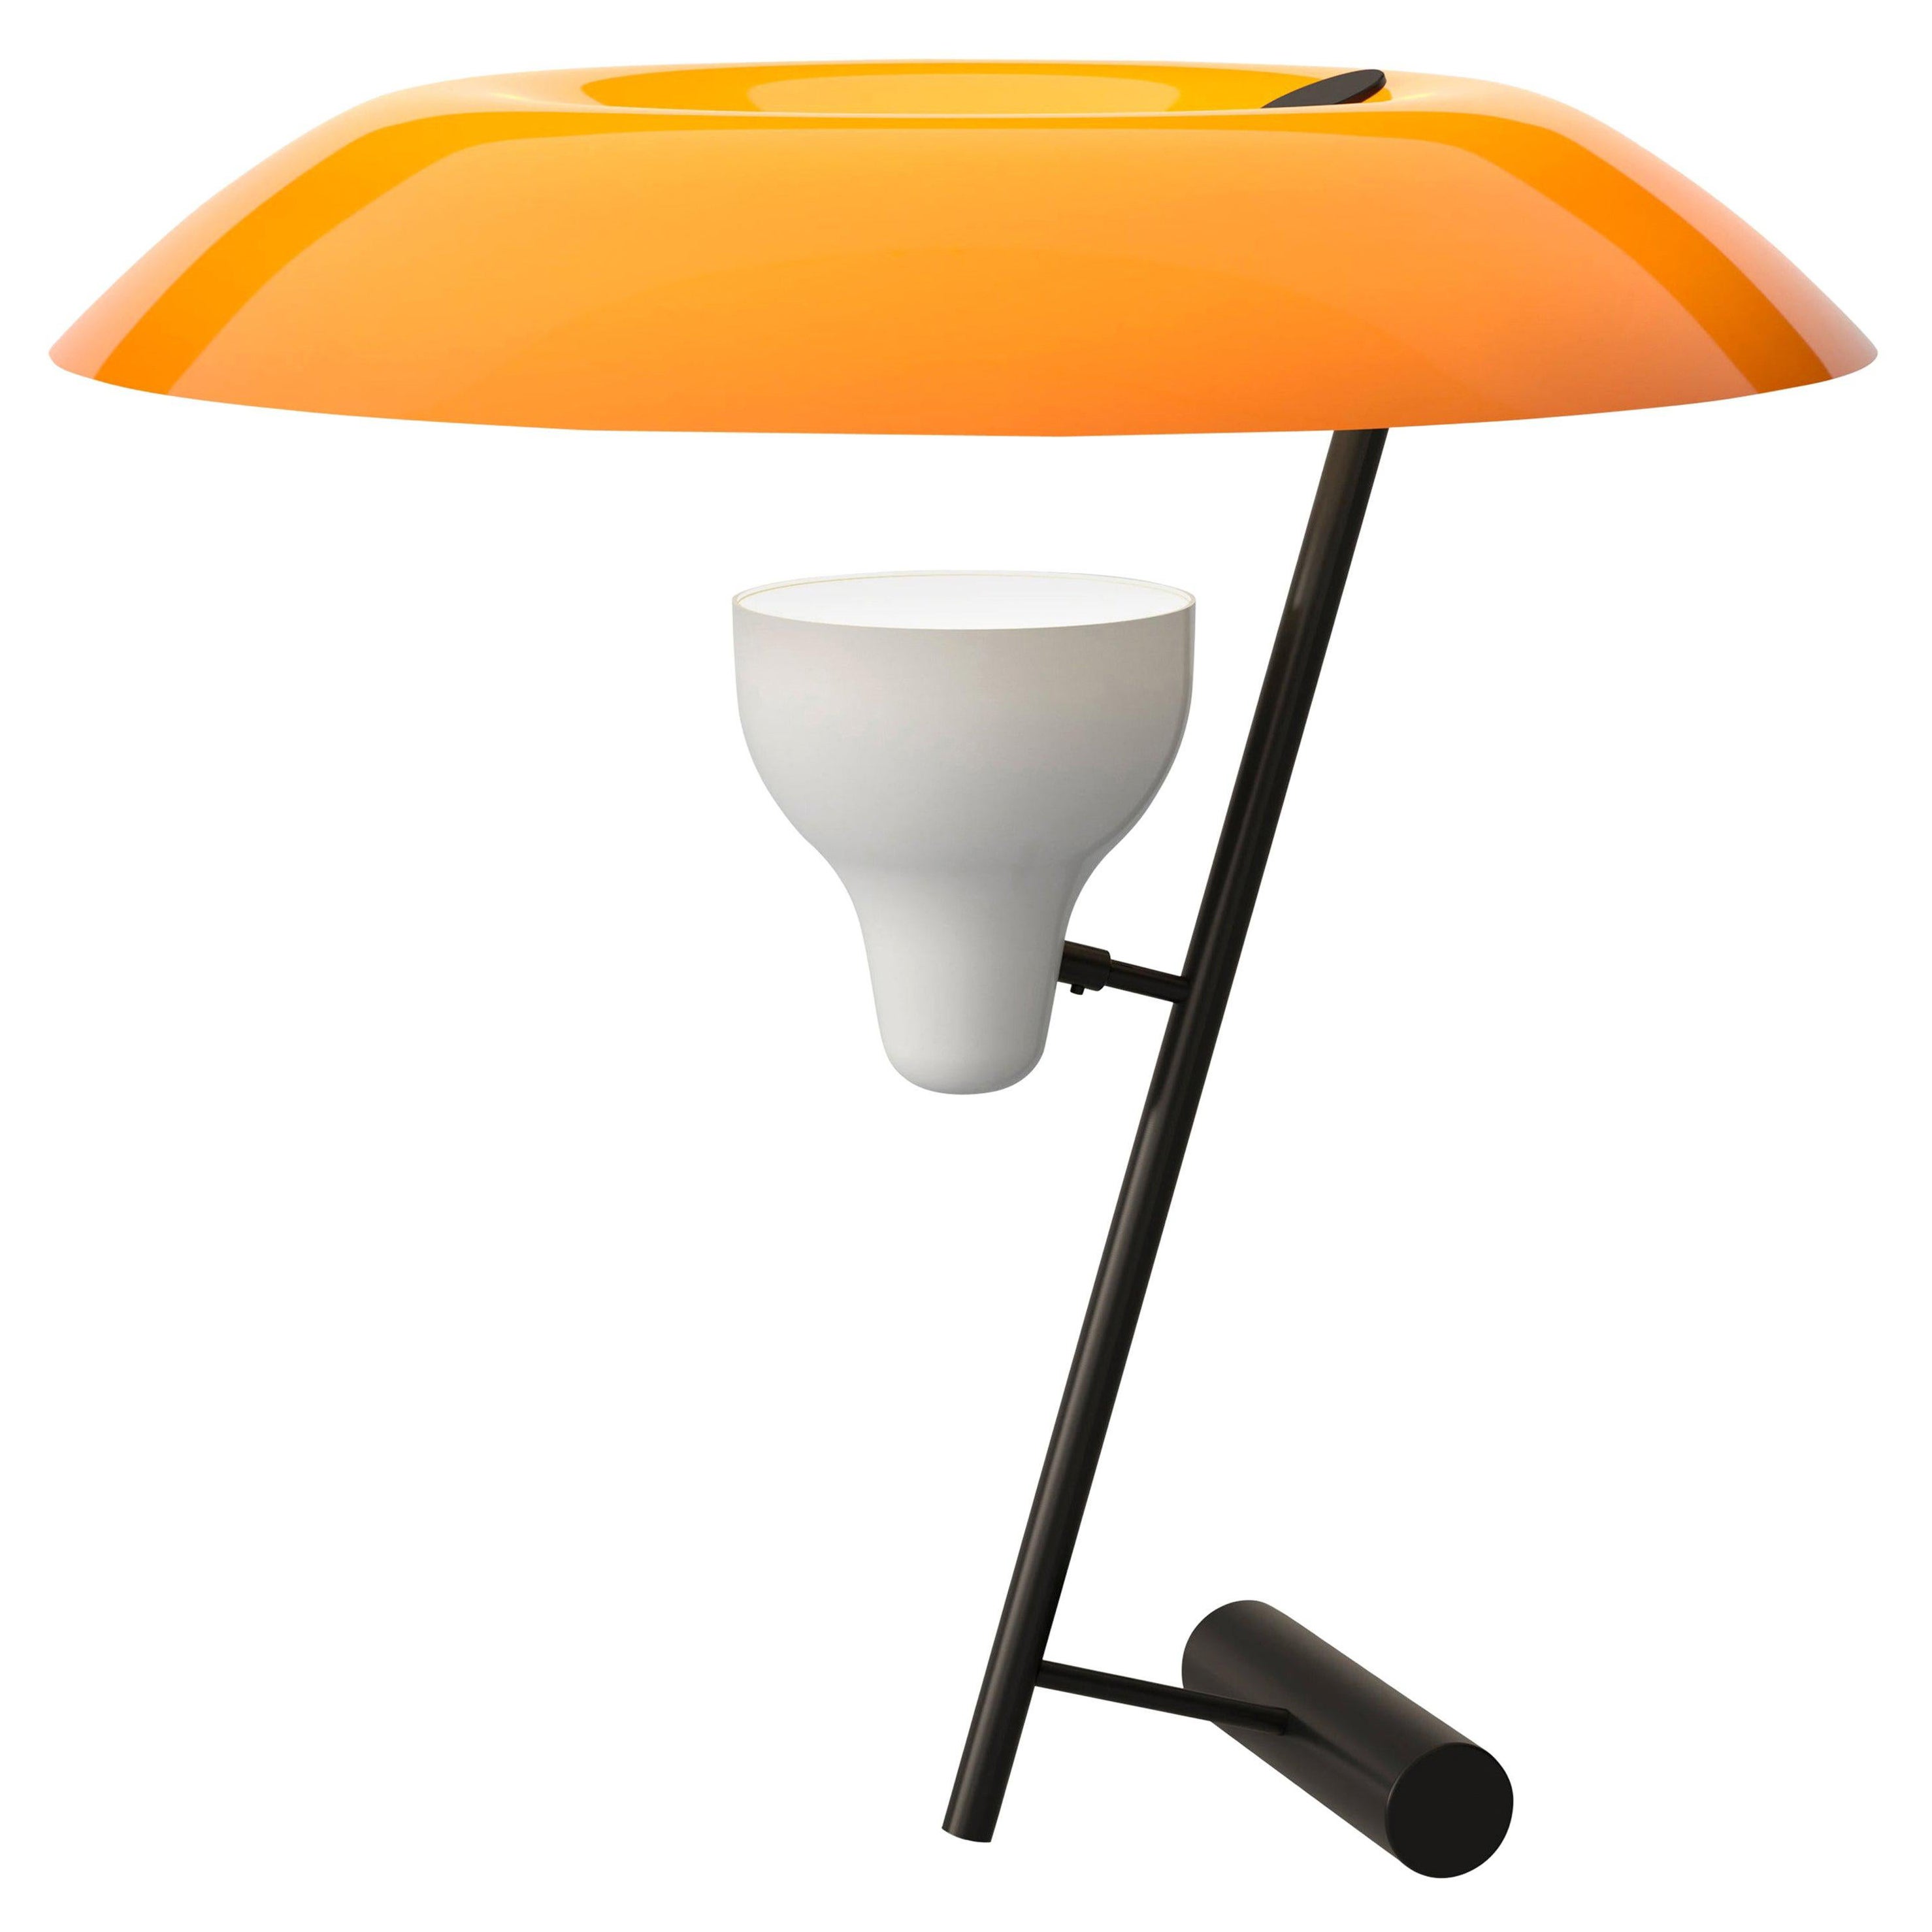 Gino Sarfatti-Lampe, Modell 548, brüniertes Messing mit orangefarbenem Difuser für Astep